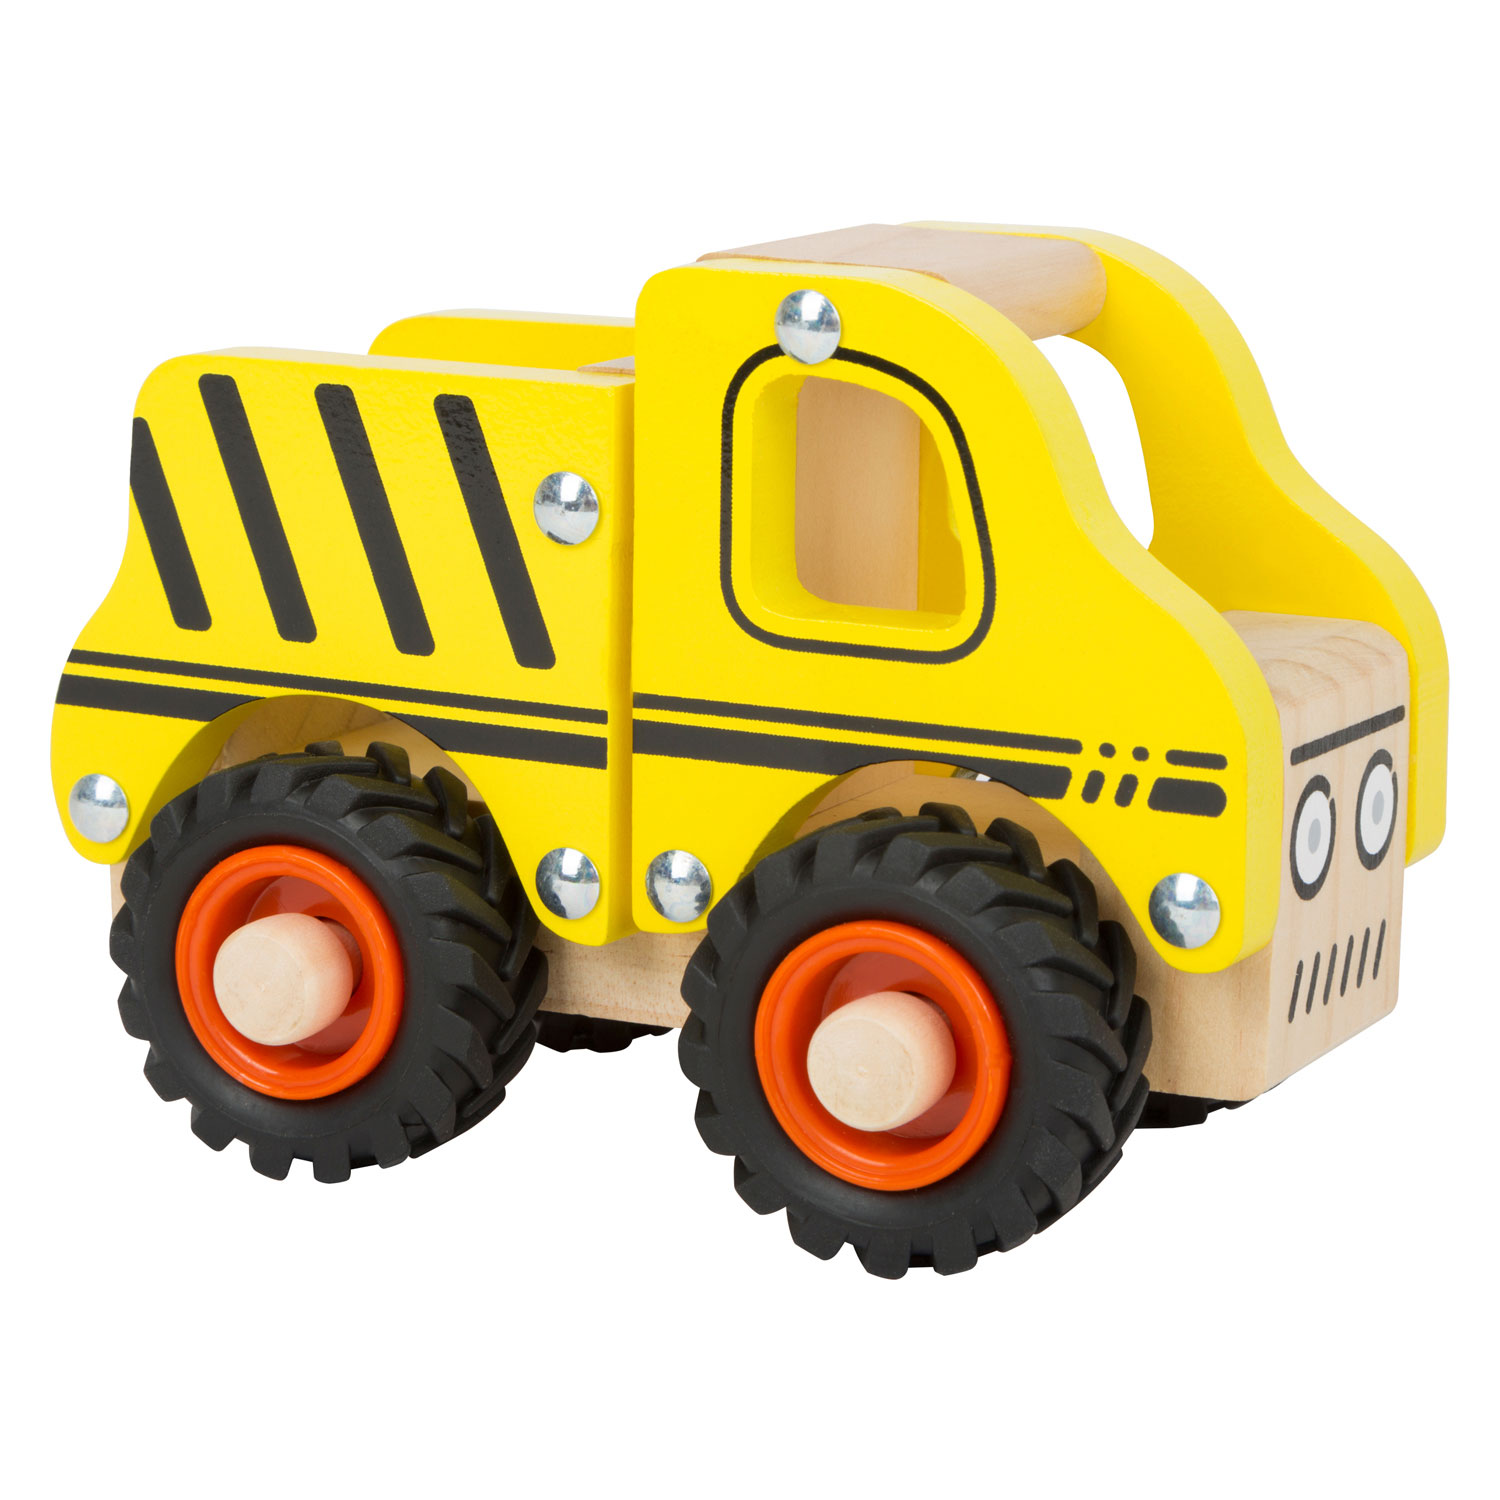 Camions de construction empilables jouet en bois